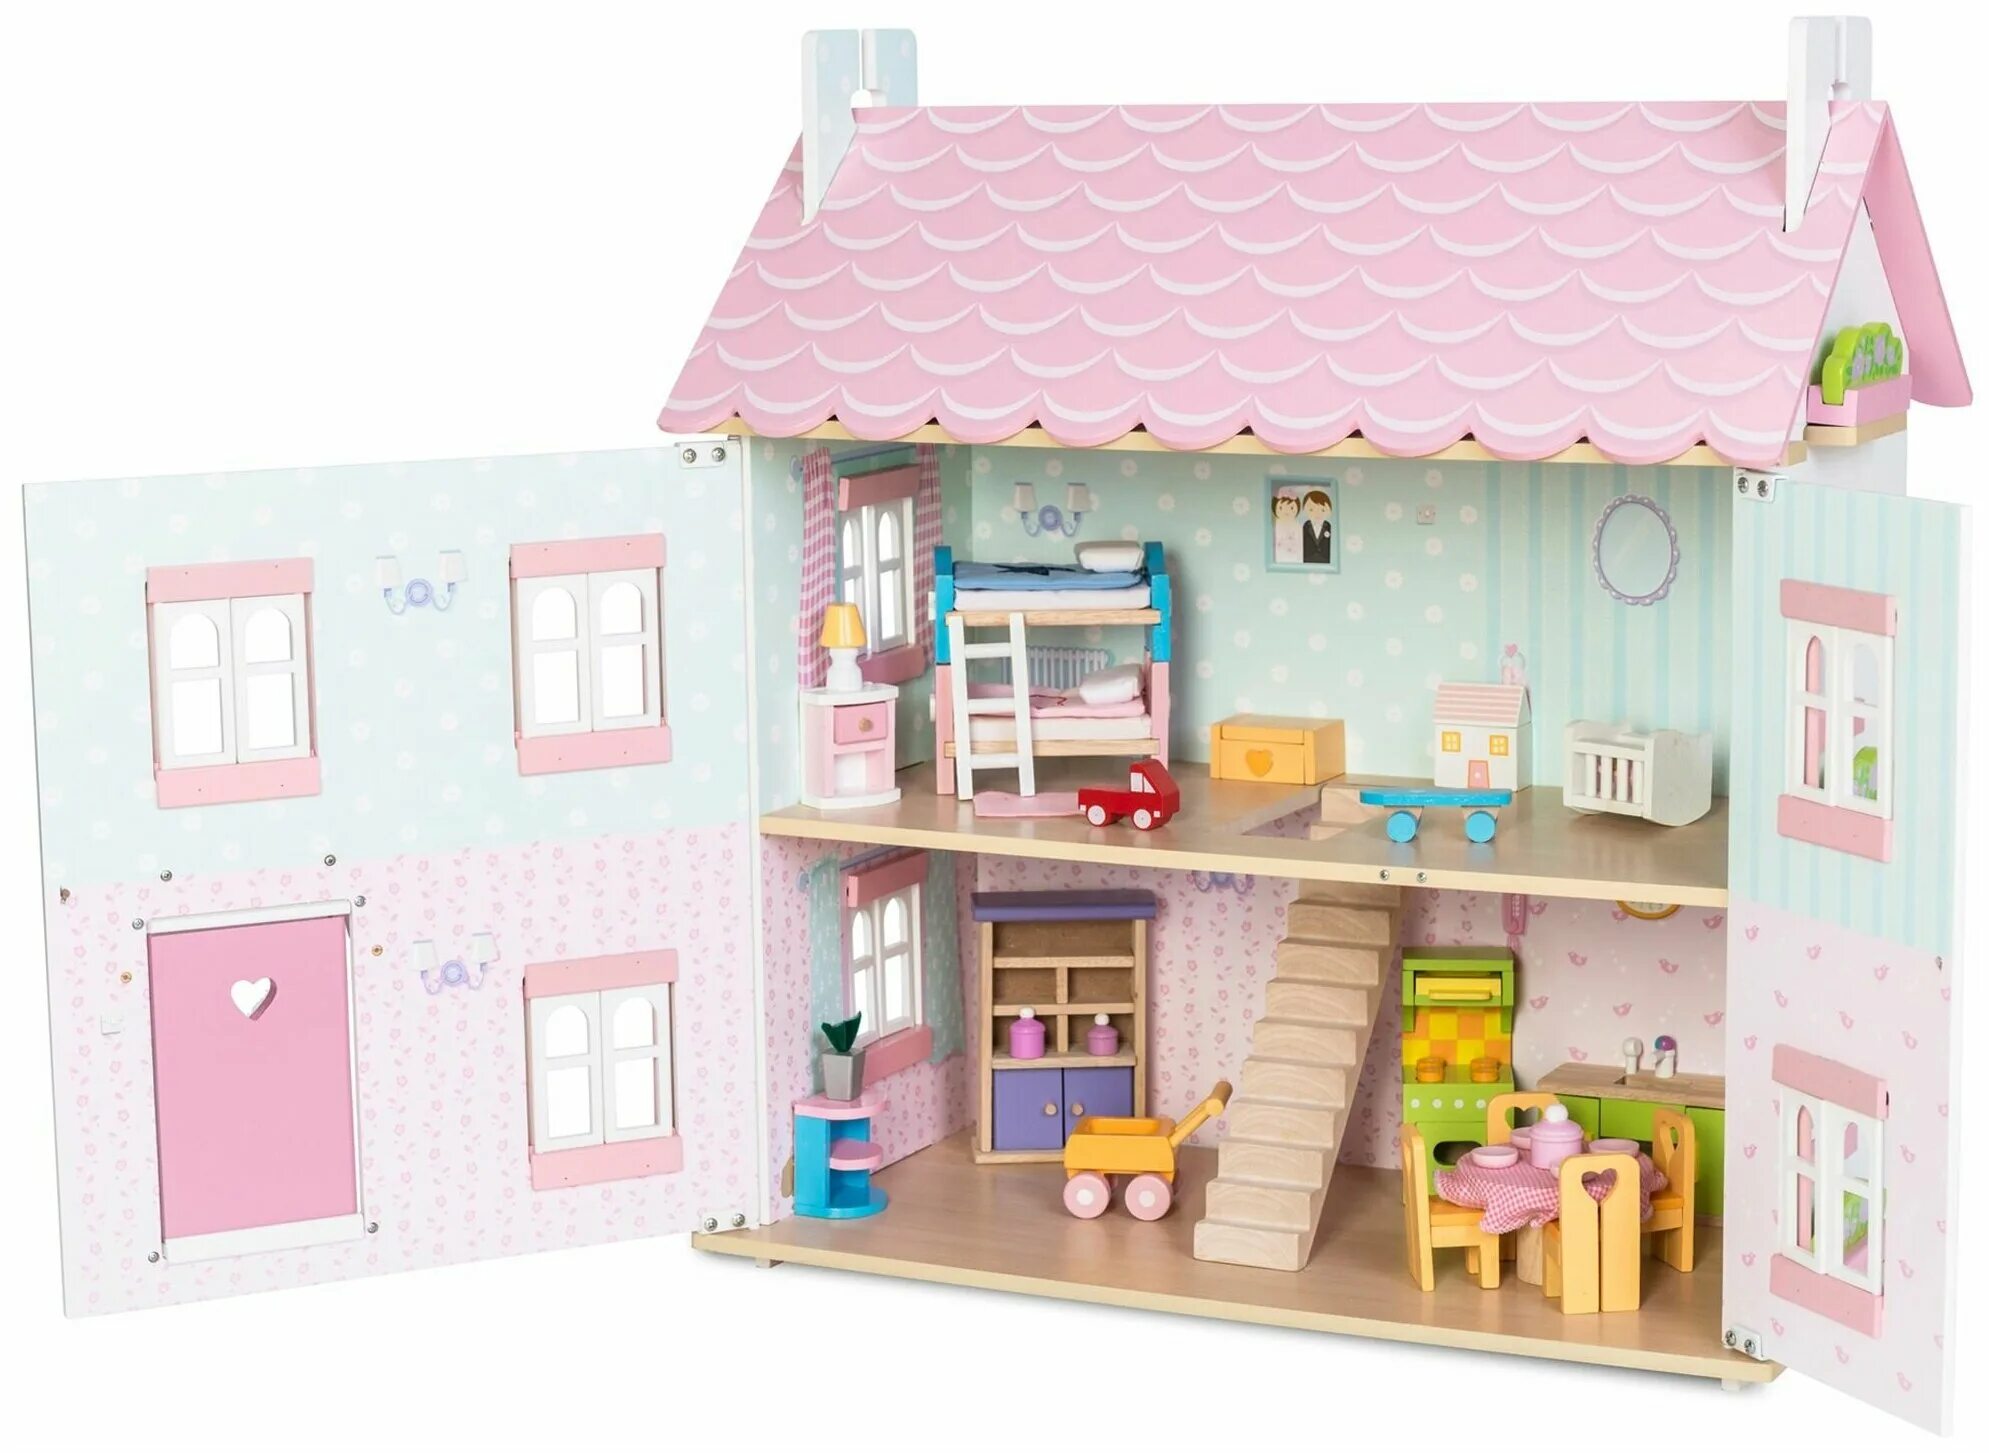 Дом с мебелью продается. Кукольный дом доллхаус Dollhouse. Кукольный домик "Софи". Doll House домик для кукол pretty Dollhouse.